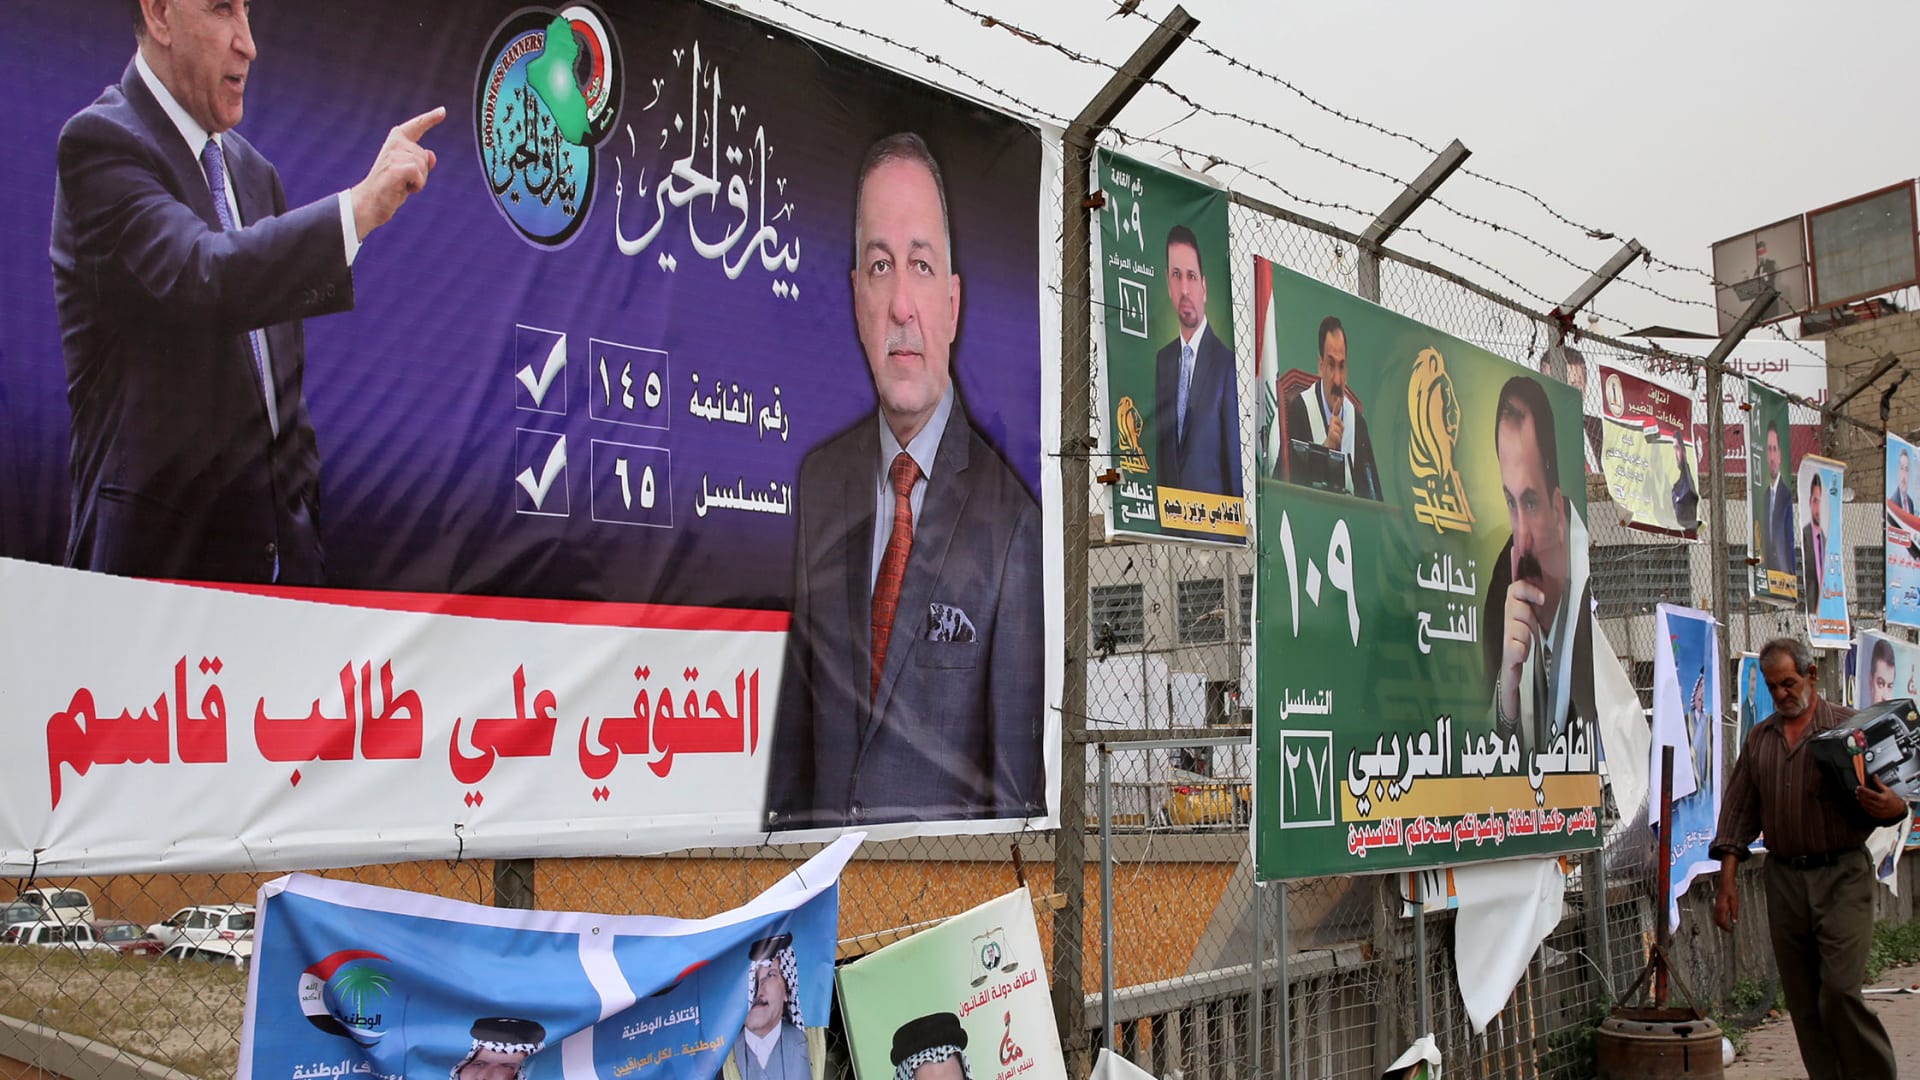 البرلمان العراقي يعقد جلسة استثنائية ويصوت على قرارات بشأن الانتخابات